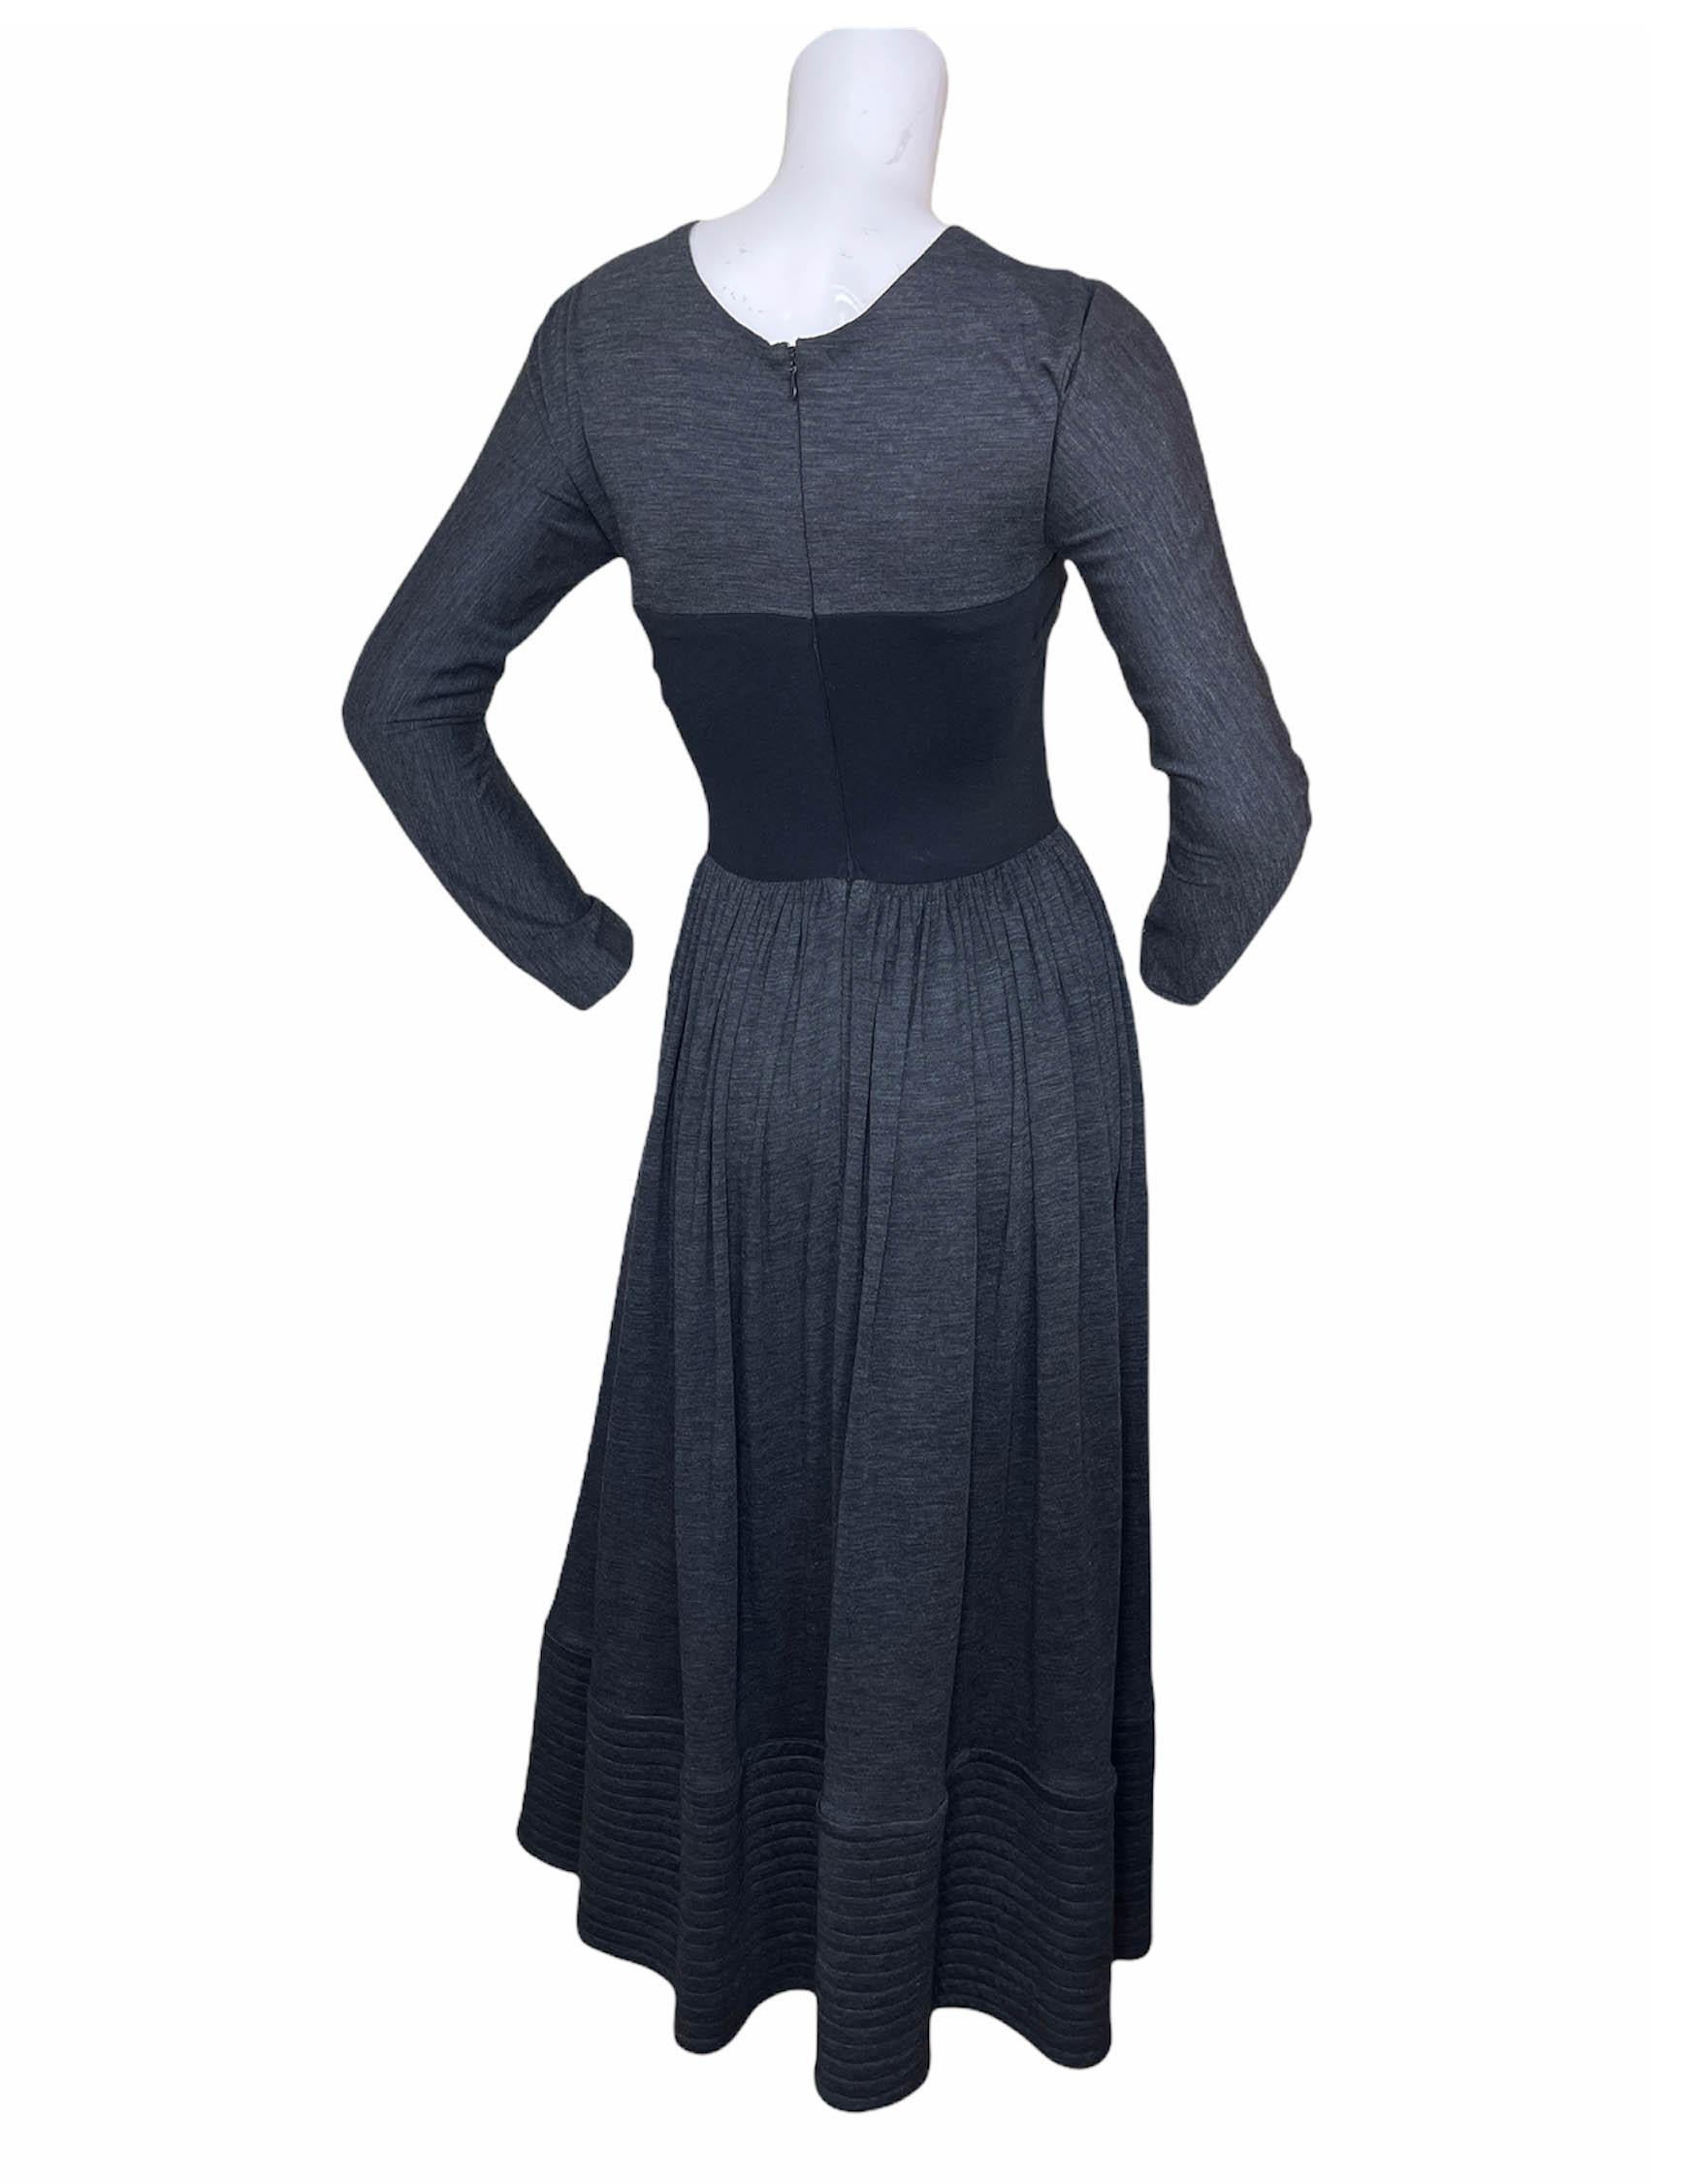 Geoffrey Beene Grey Longsleeve Jersey Dress w/ Black Bodice sz S For Sale 5